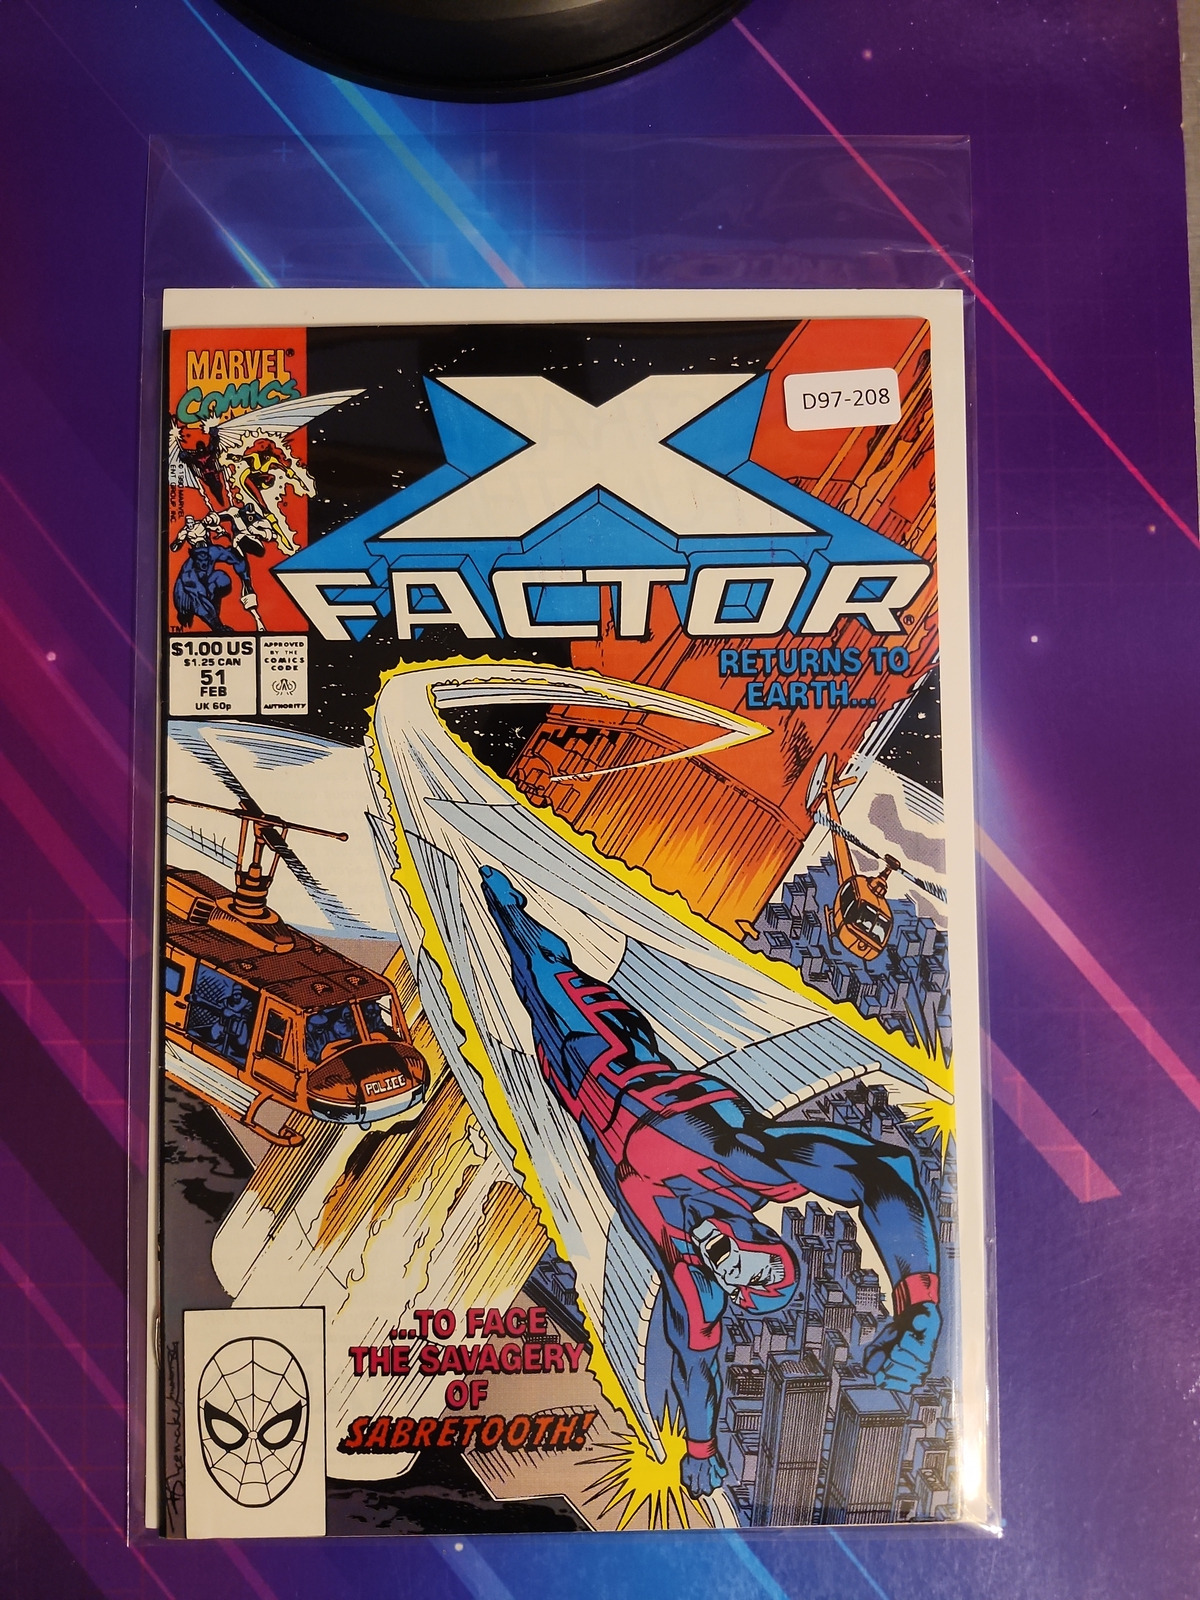 X-FACTOR #51 VOL. 1 8.0 1ST APP MARVEL COMIC BOOK D97-208